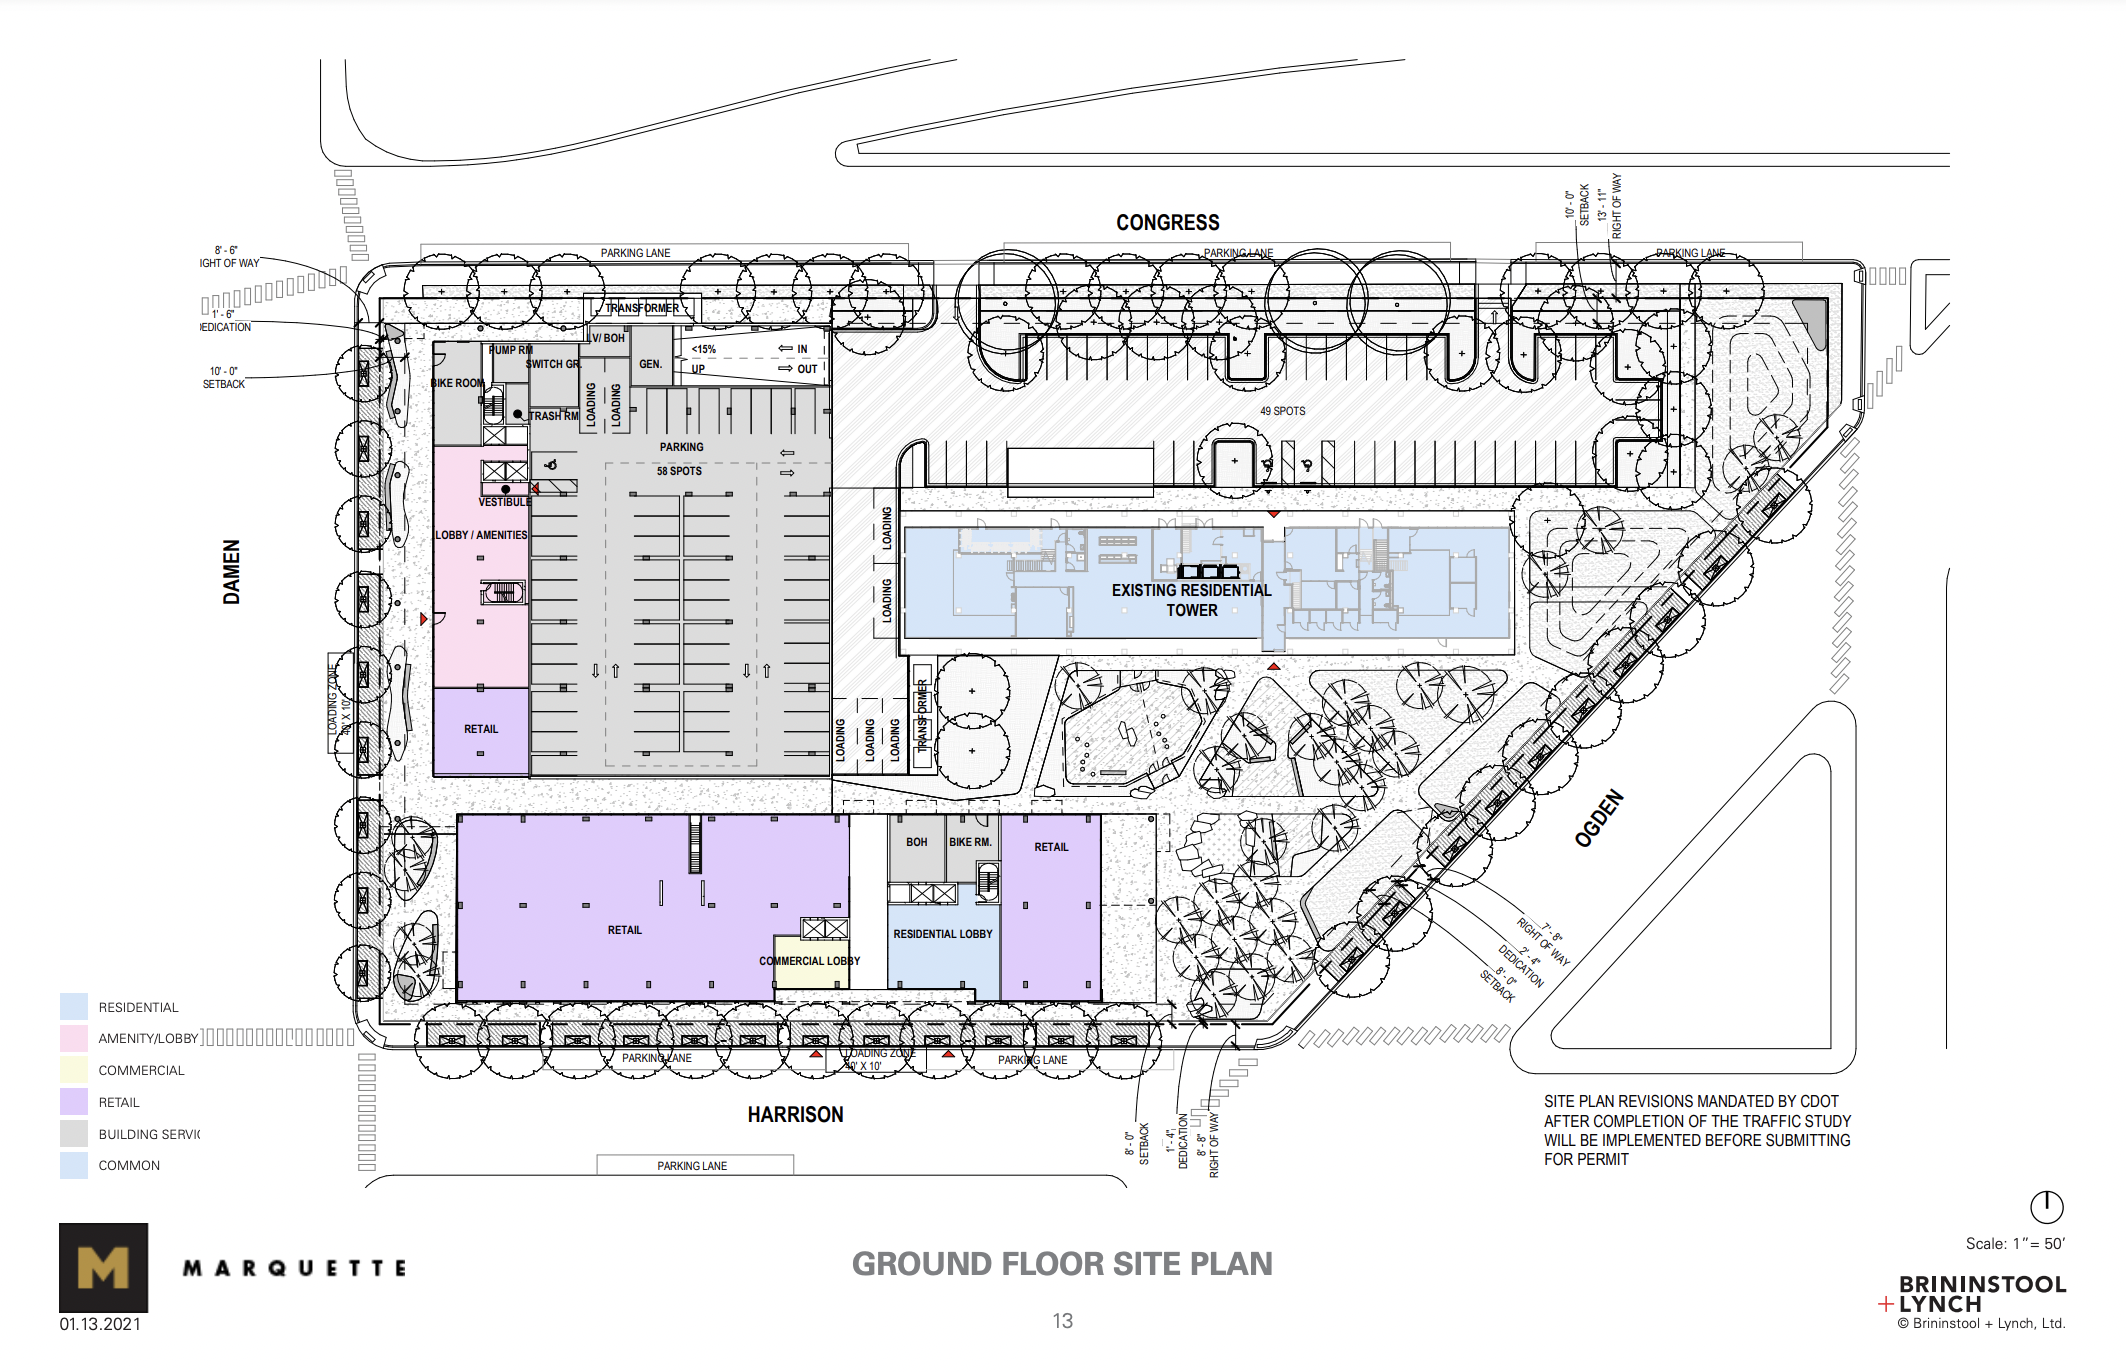 Ground floor in master plan (513 S Damen Avenue in upper left)